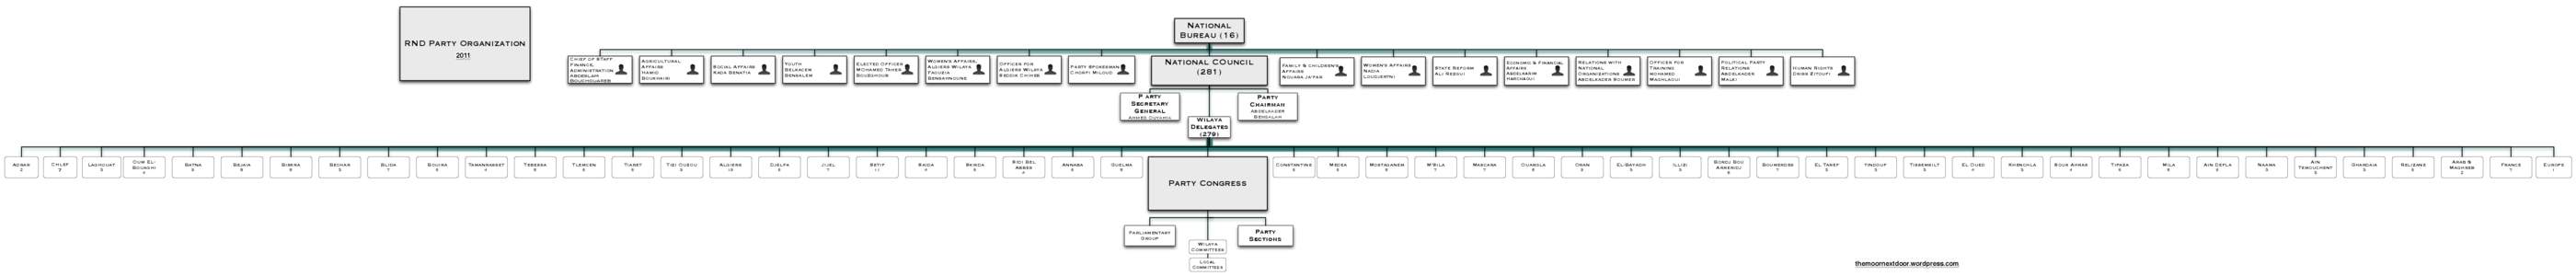 National Bureau (16) RND Party Organization 2011